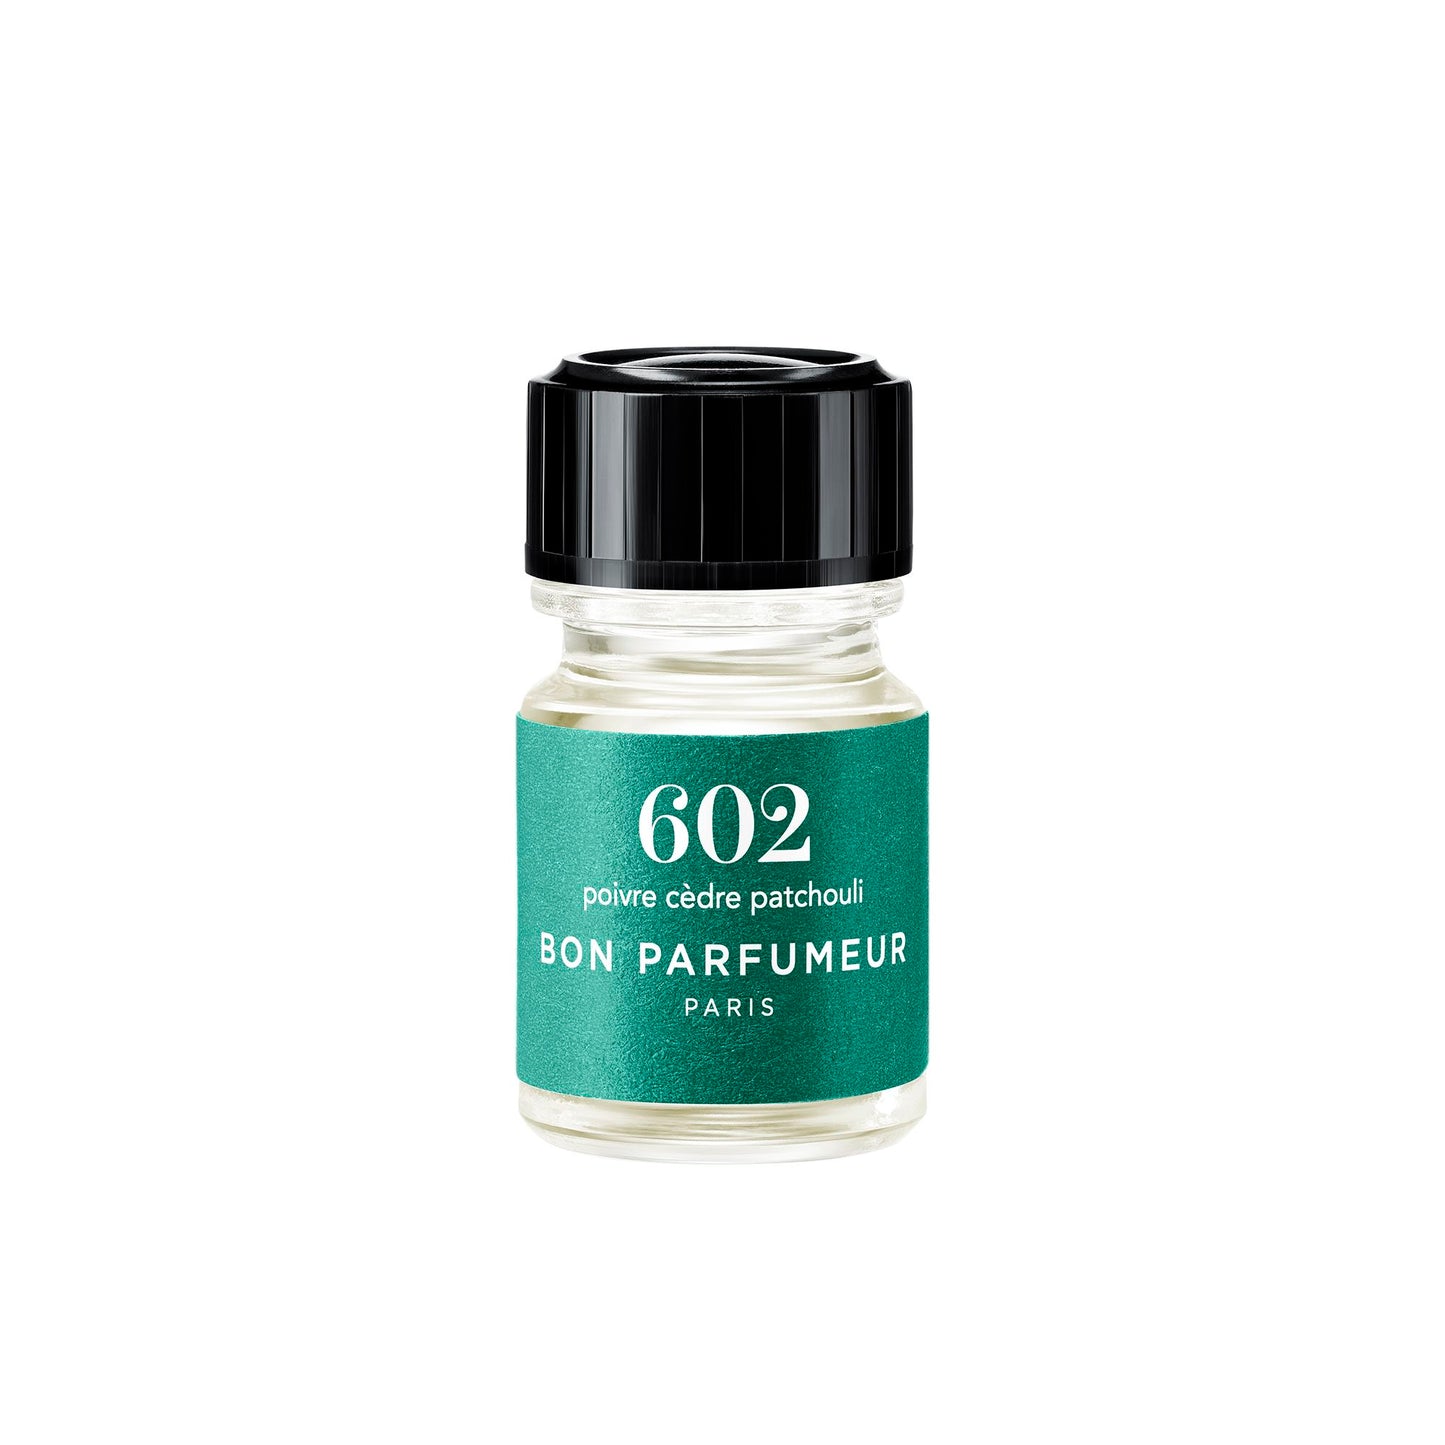 Mini-Parfums 2,5ml Bon Parfumeur France 602: Poivre, cèdre, patchouli 